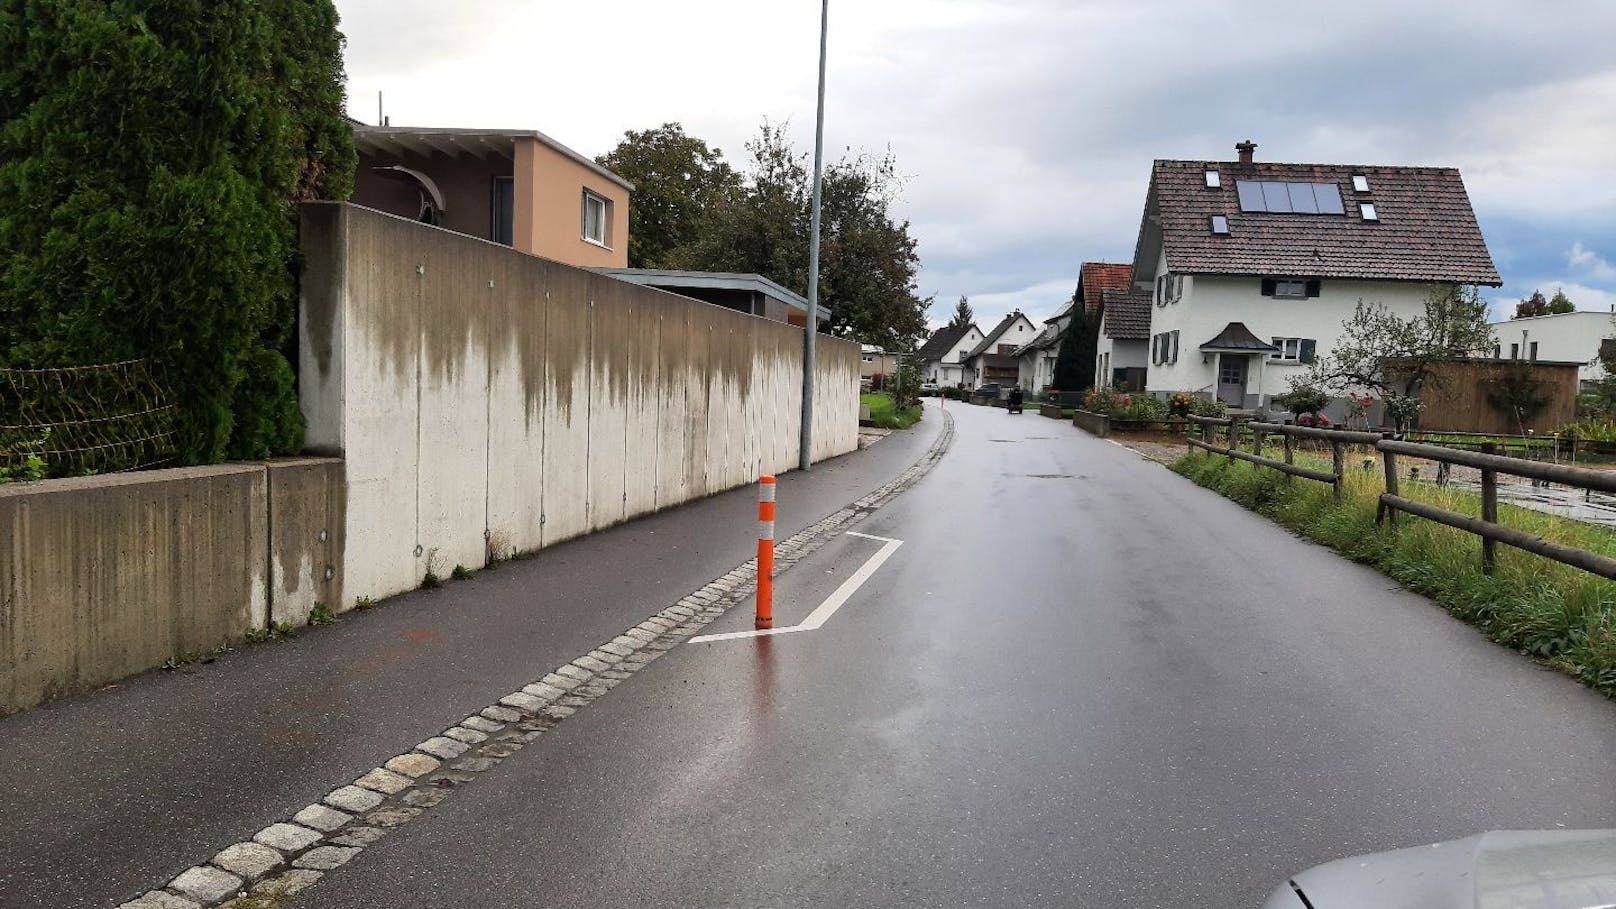 13 Verkehrspoller wurden in Lustenau gestohlen.